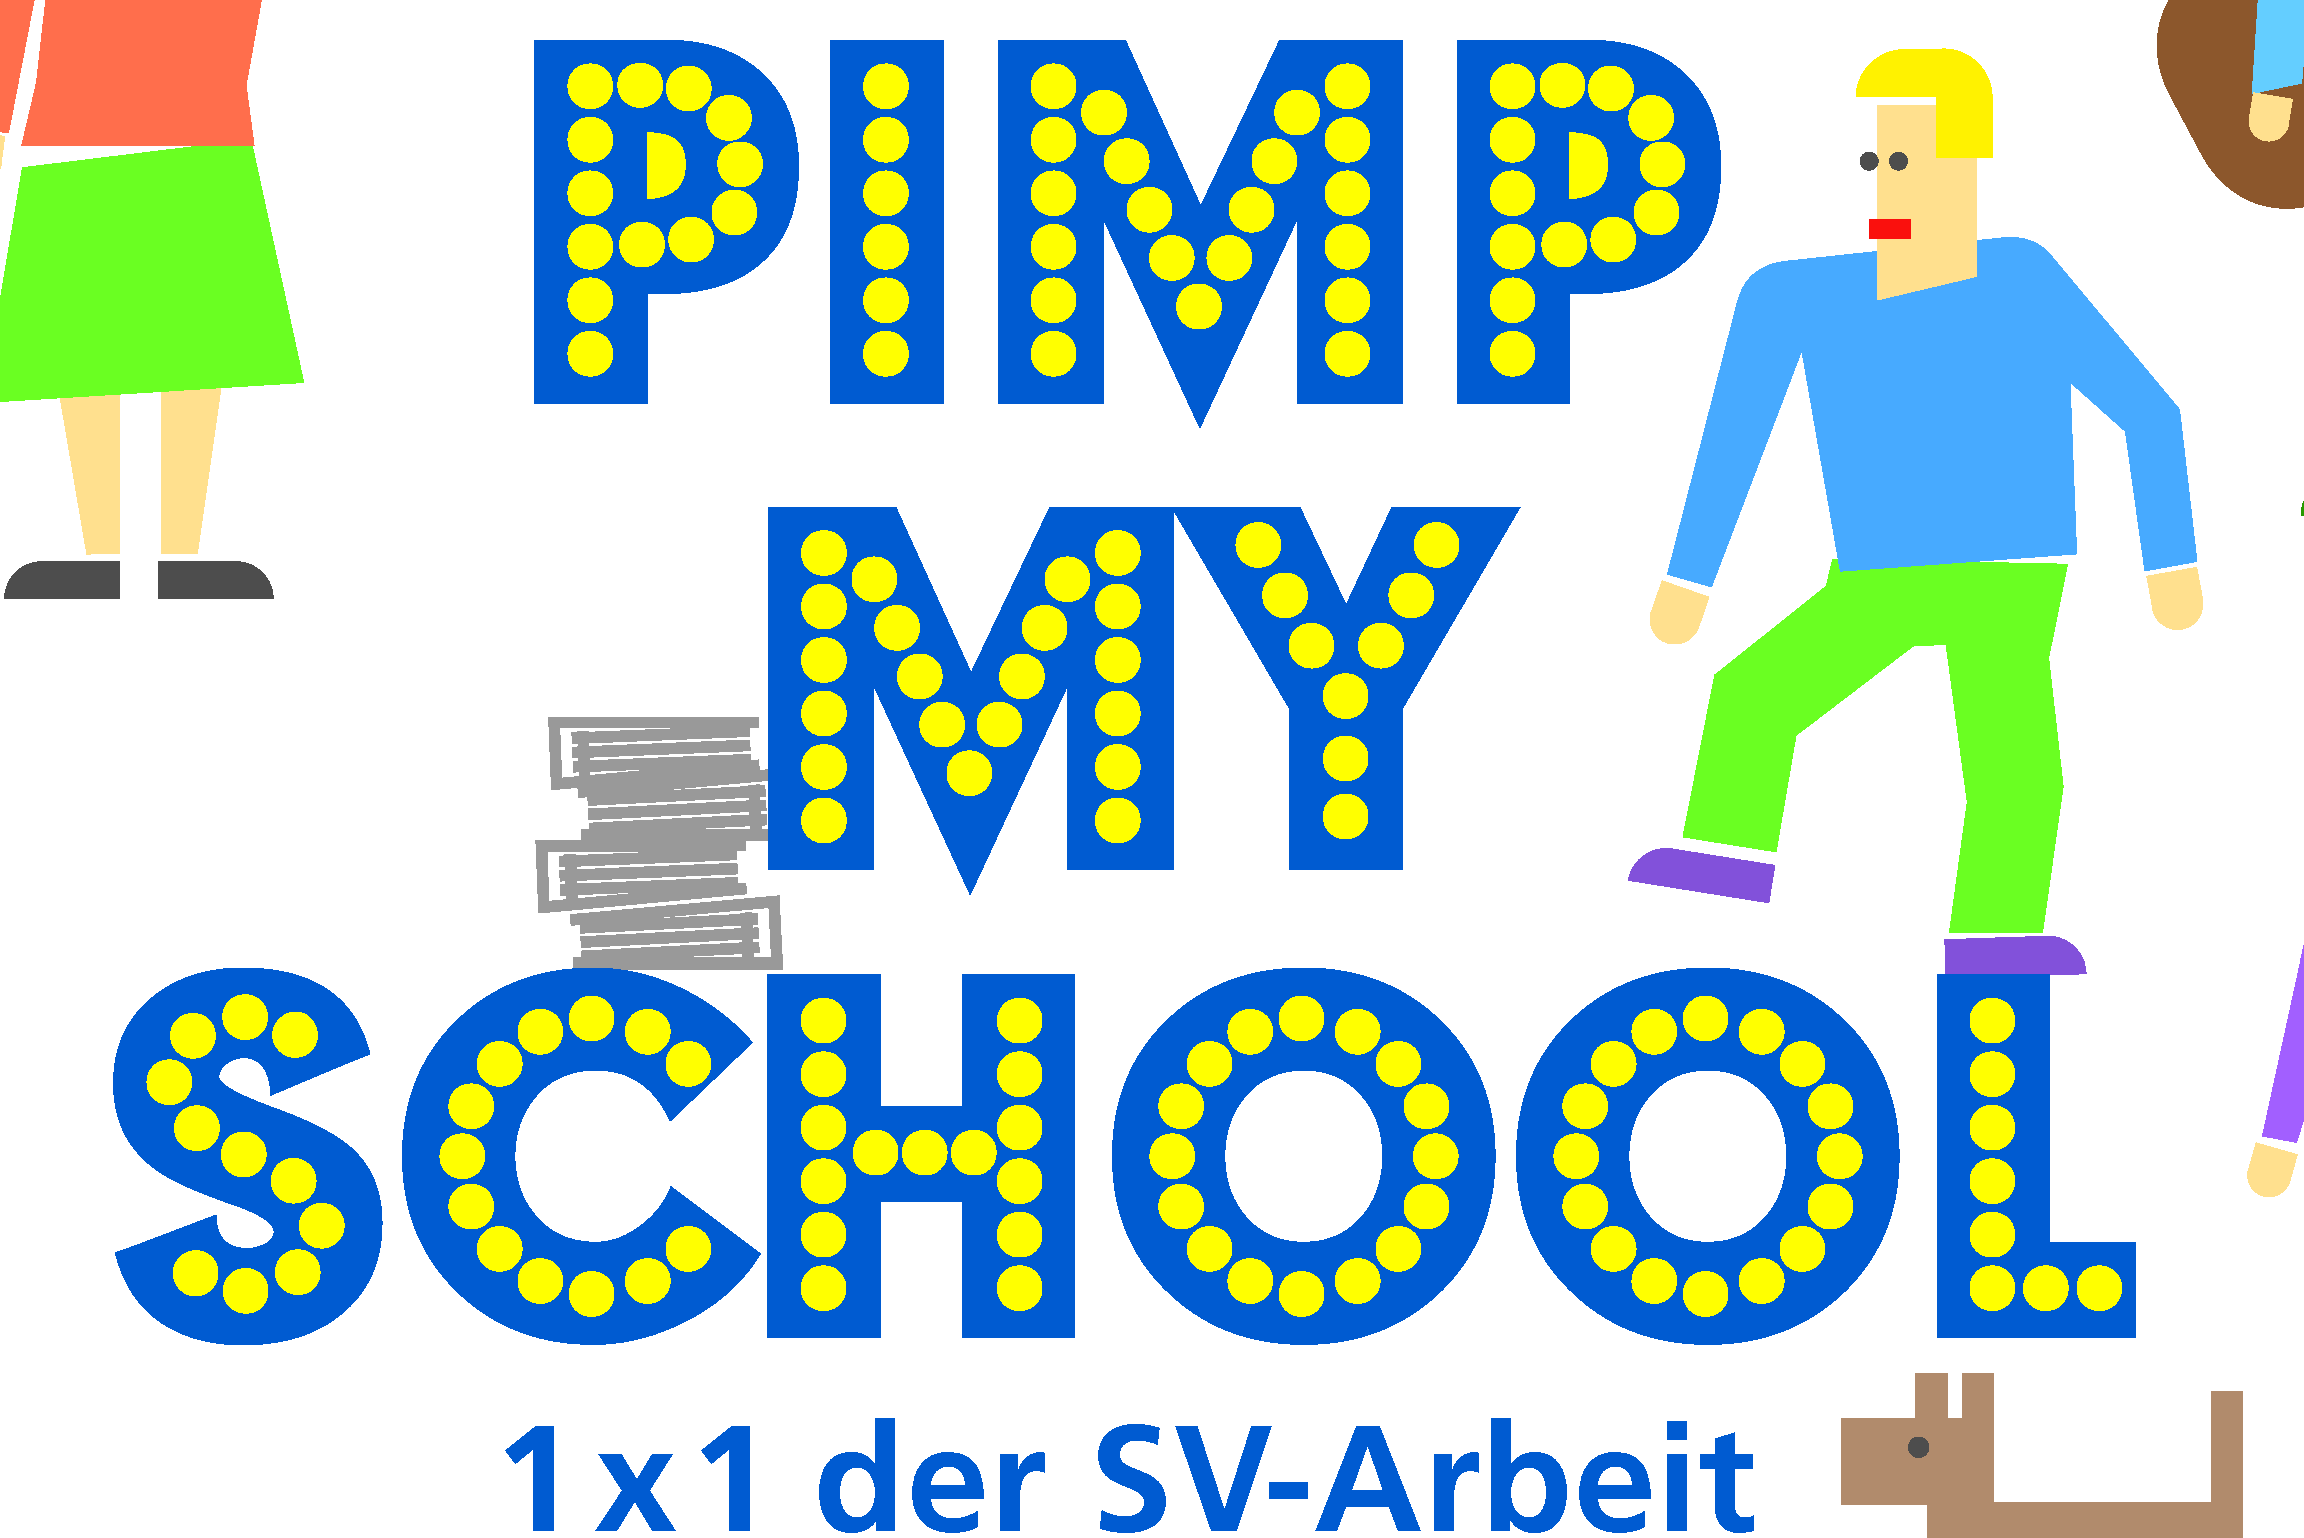 Die Grafik zeigt komikhaft einige Personen, von denen eine Gitarre spielt und eine einen Antrag unterm Arm hat. In blauer Schrift mit gelben Punkten steht dort "Pimp my School - 1x1 der SV Arbeit"."